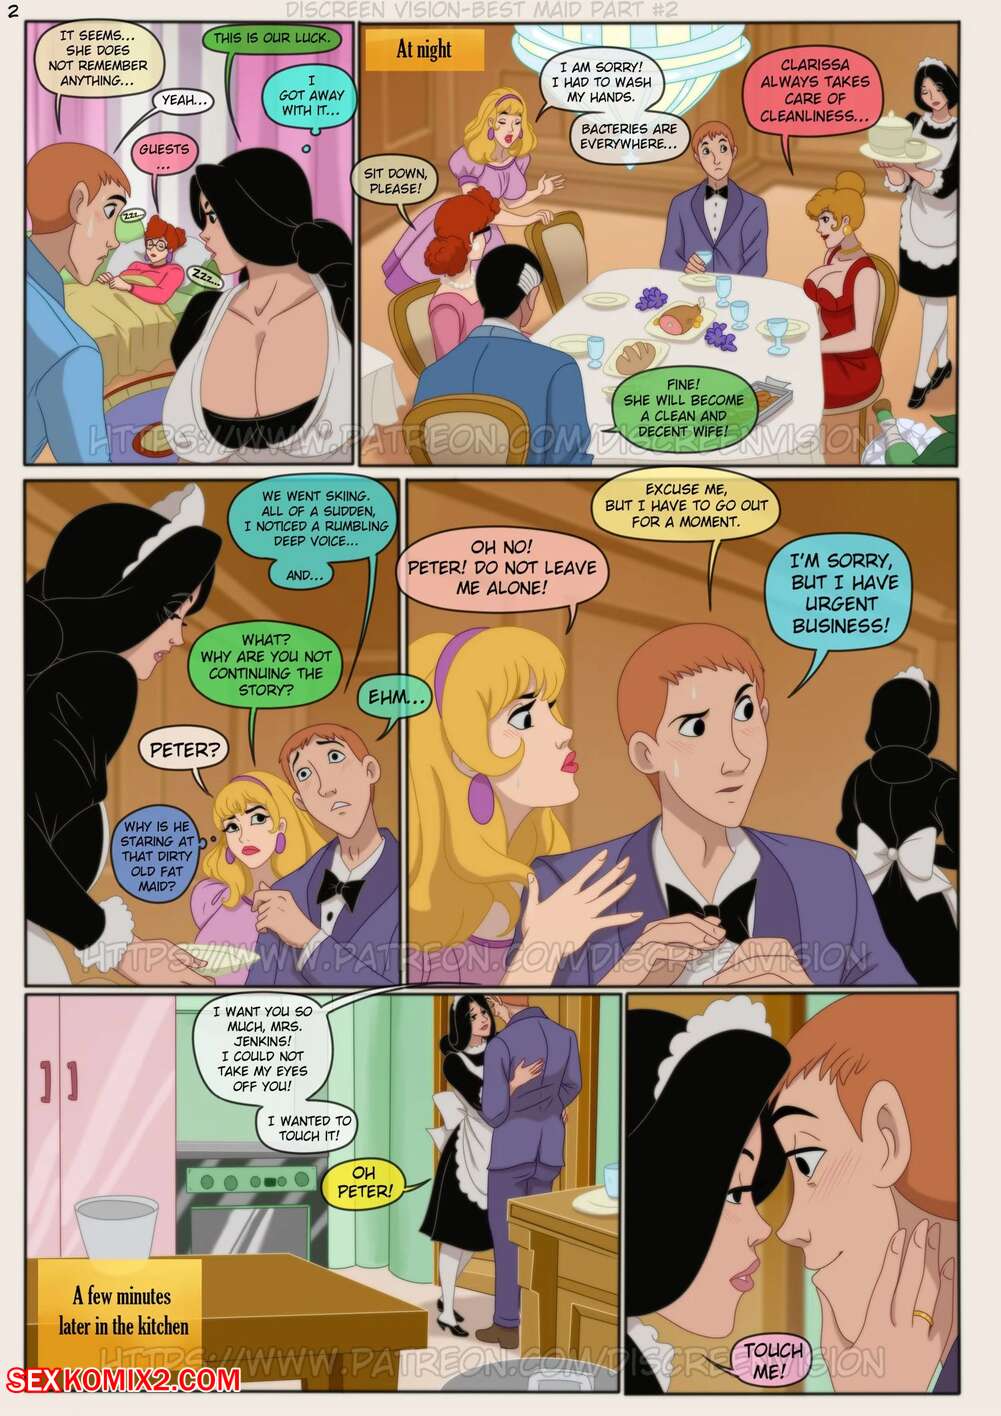 âœ…ï¸ Porn comic Best Maid. Chapter 2. Inusen, Discreen Vision. Sex comic a  dinner party, âœ…ï¸ | | Porn comics hentai adult only | wporncomics.com